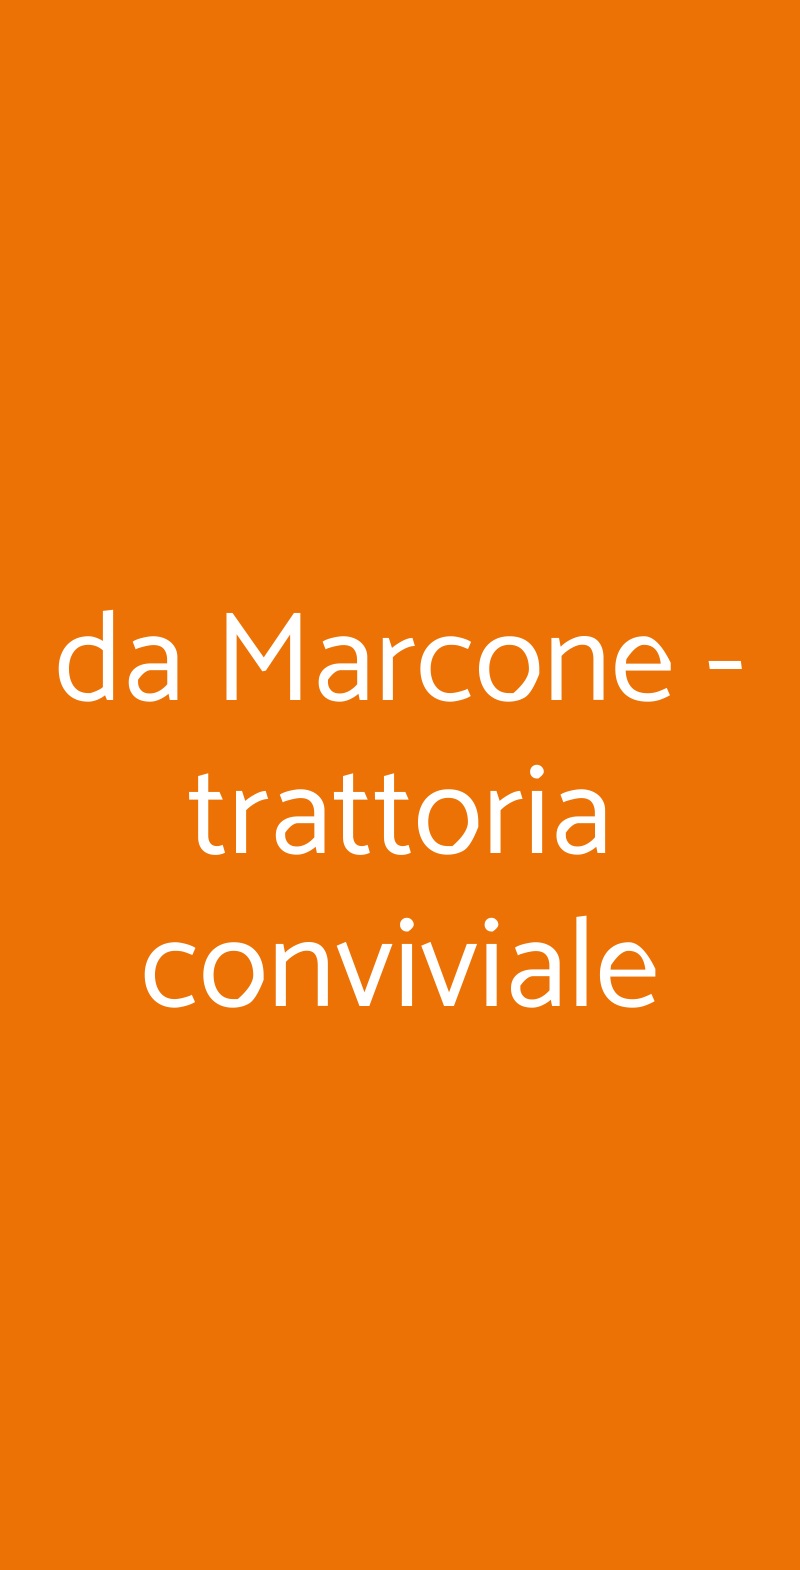 da Marcone - trattoria conviviale Milano menù 1 pagina